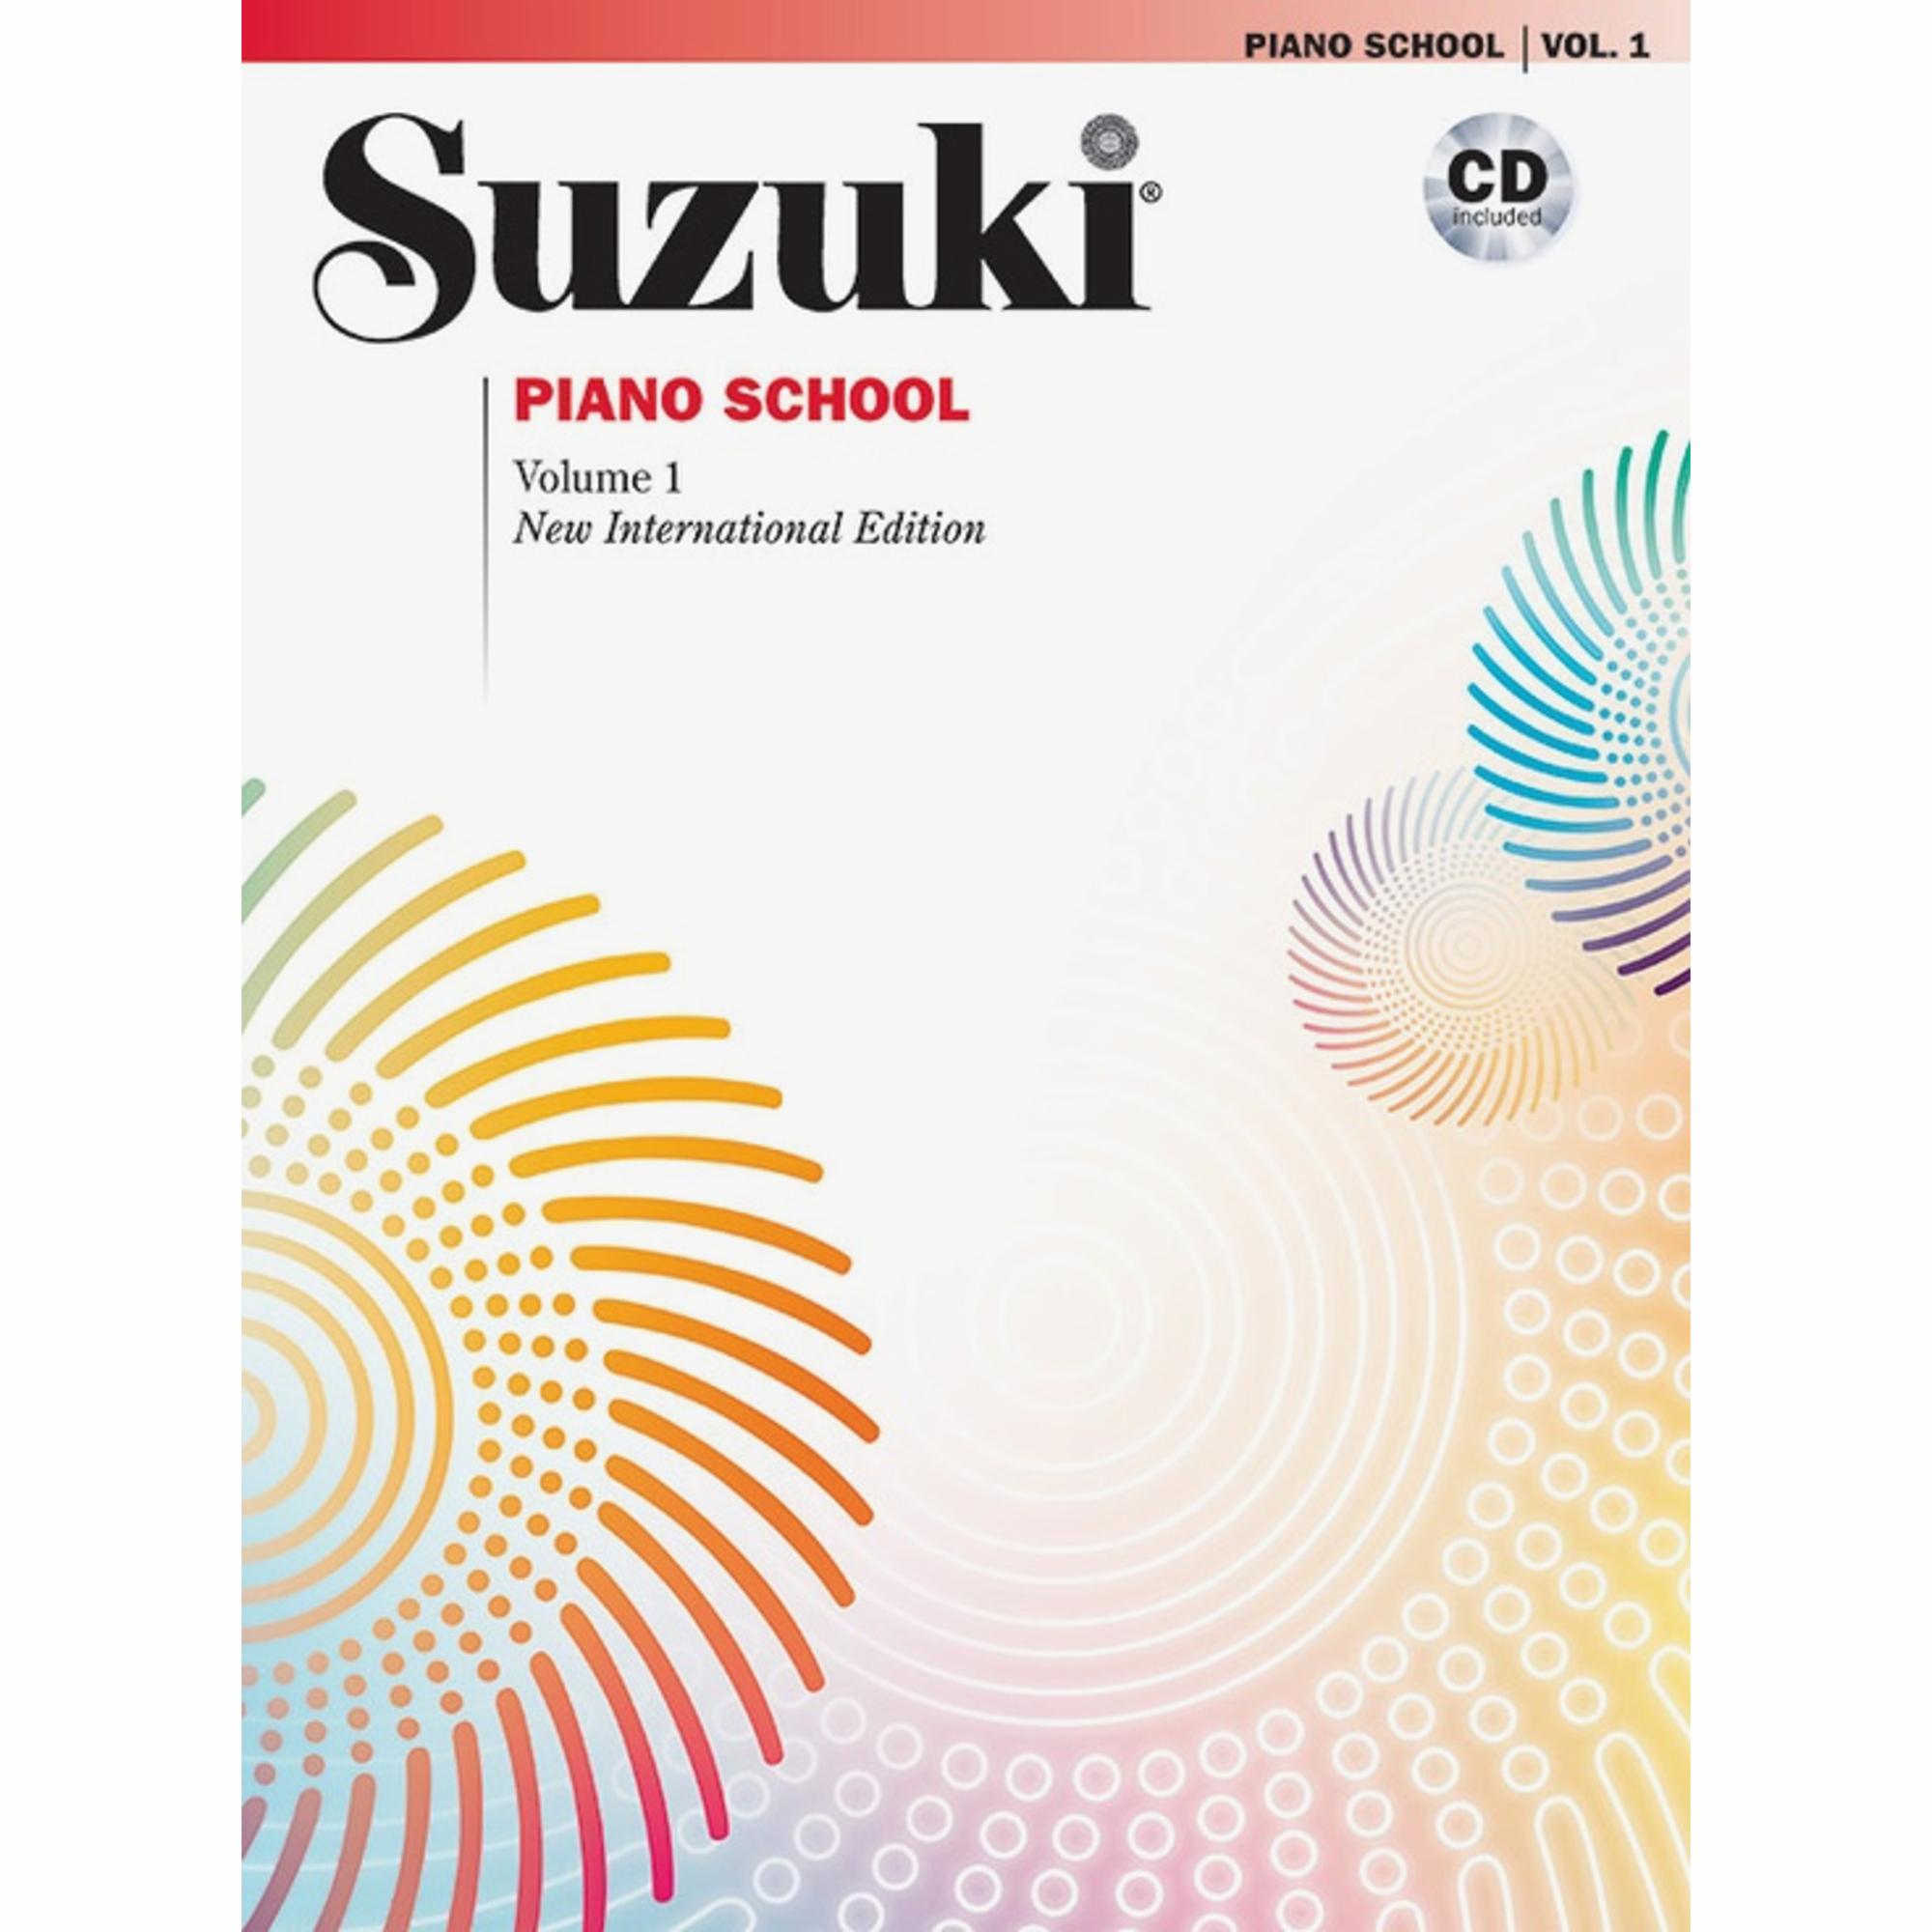 Suzuki Piano School: Piano Part and CD Combo Packs